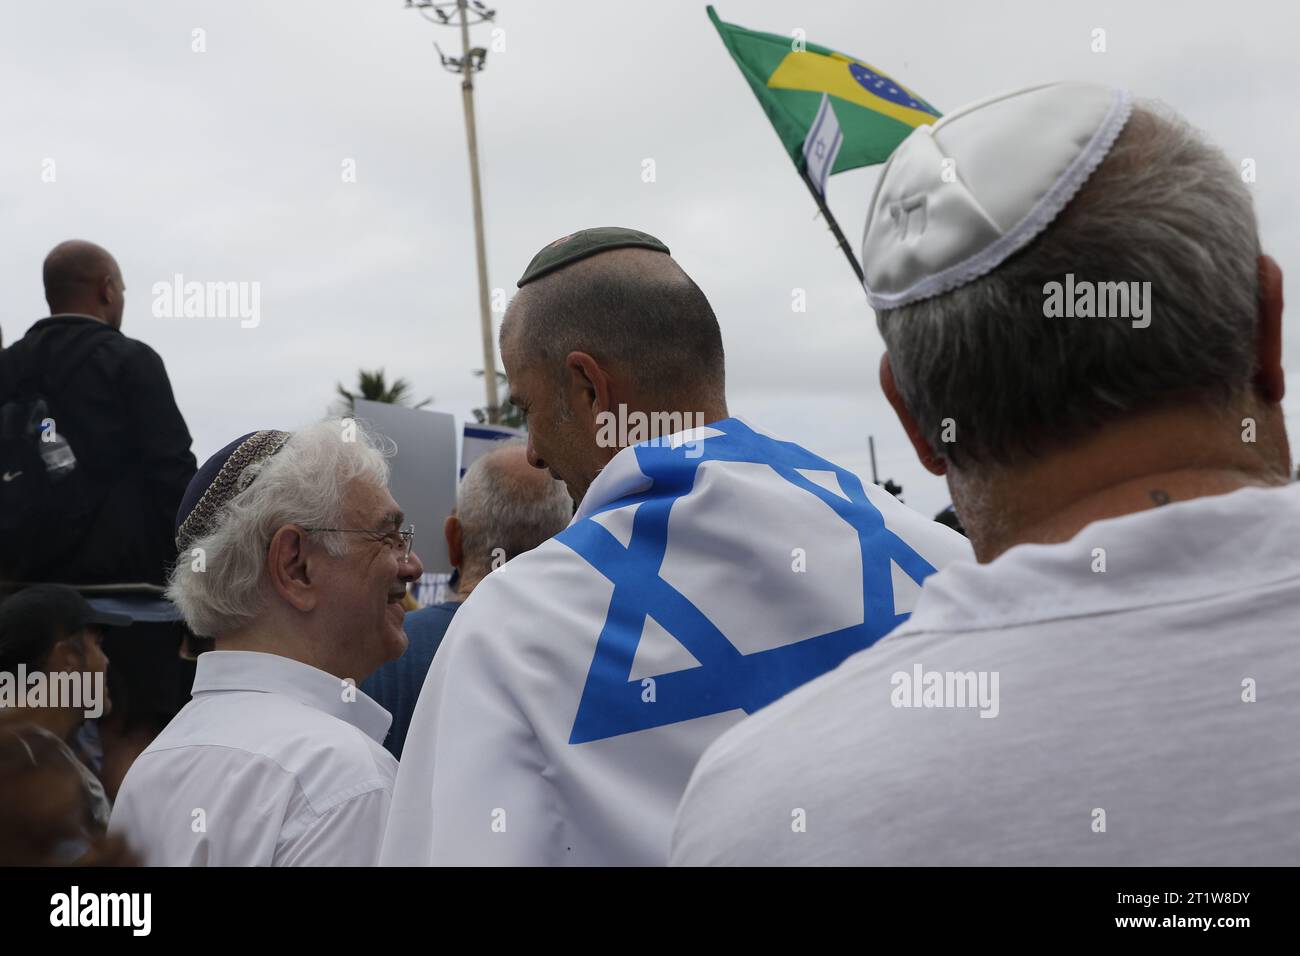 La comunità ebraica marcia a sostegno di Israele nel conflitto con Hamas, a Copacabana. Manifestazione del popolo ebraico con bandiere israeliane e giudaismo Foto Stock